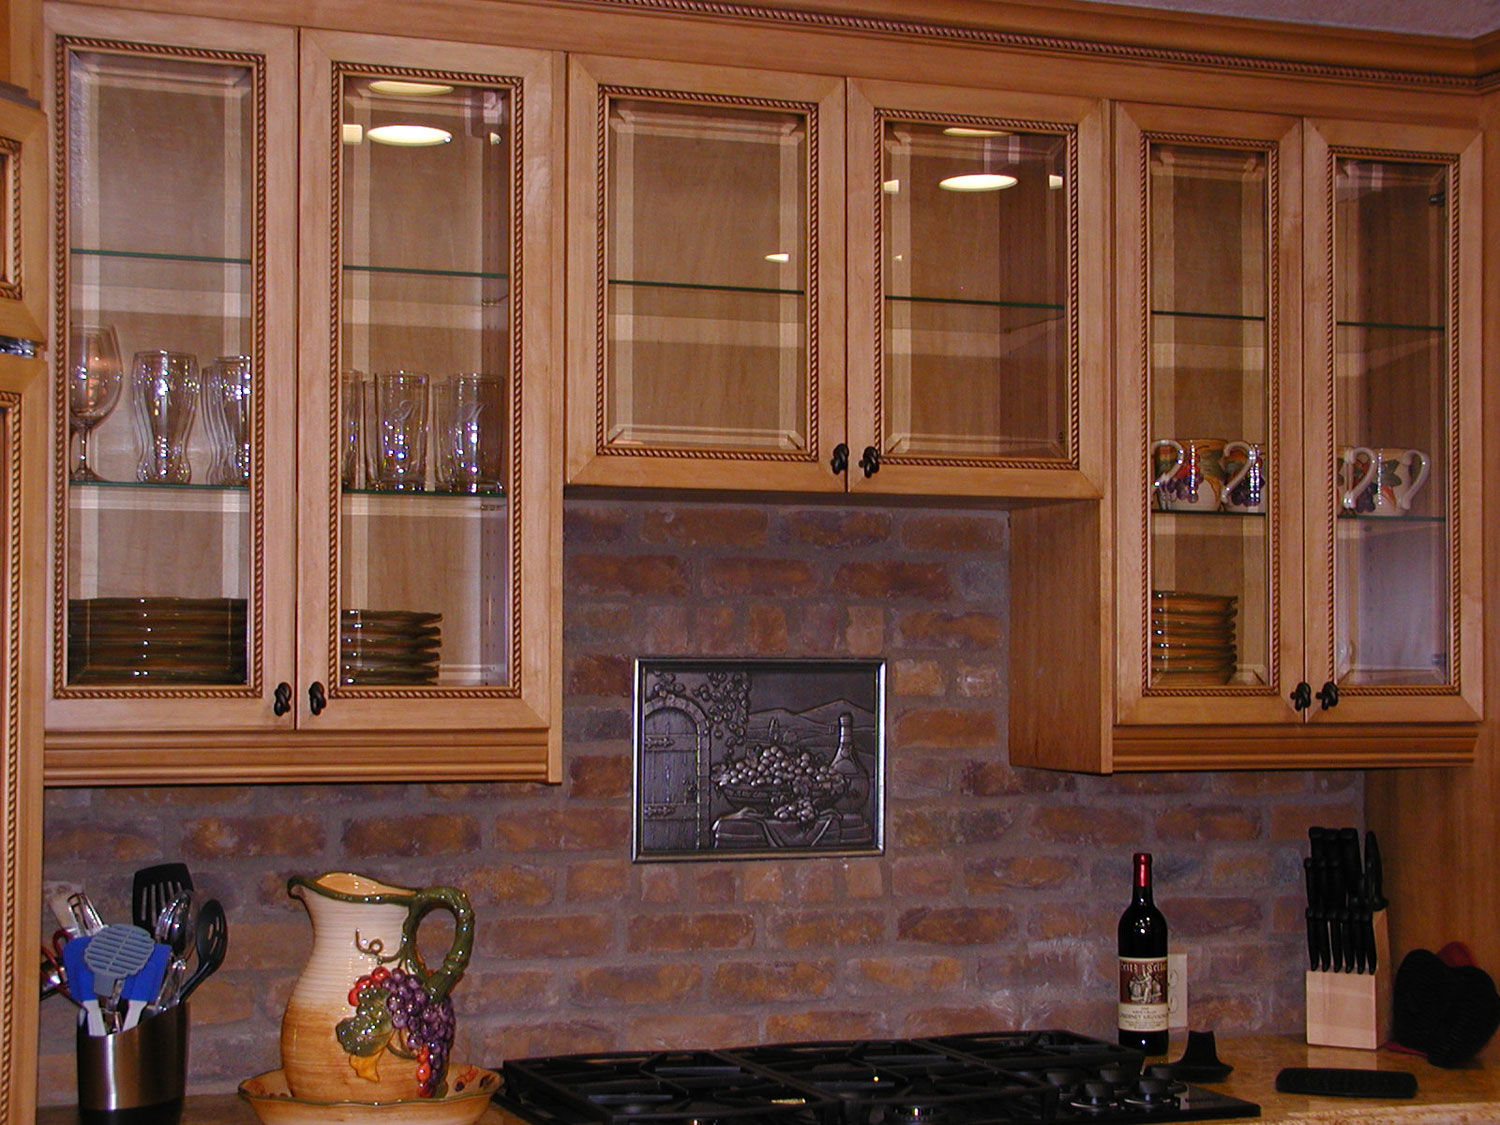 Kitchen Design Cabinet Minimalist Kitchen Design Interior With Cabinet Refacing Cost Using Glass Cabinet Door Ideas And Brick Kitchen Backsplash Kitchen Cabinet Refacing Cost For New Fresh Home Kitchen